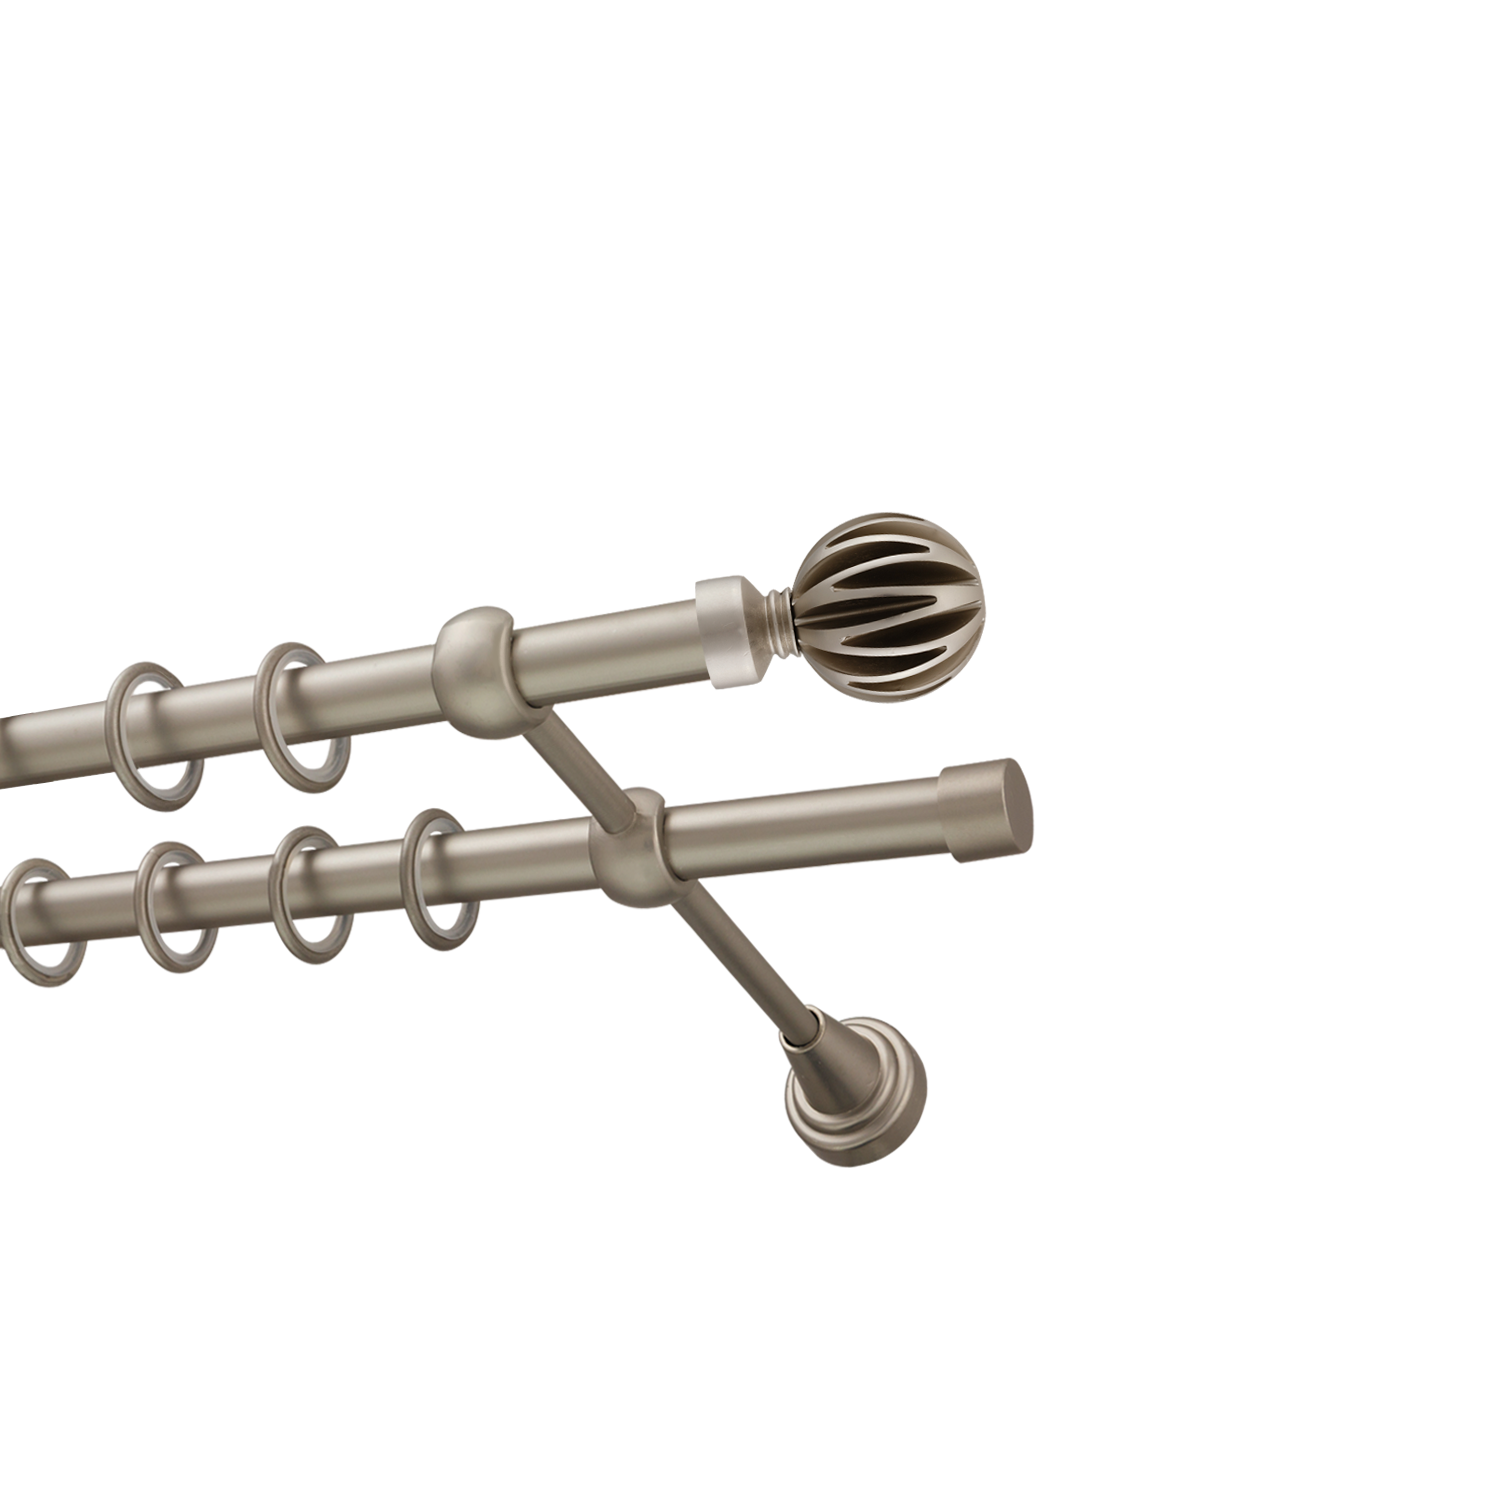 Металлический карниз для штор Шафран, двухрядный 16/16 мм, сталь, гладкая штанга, длина 240 см - фото Wikidecor.ru